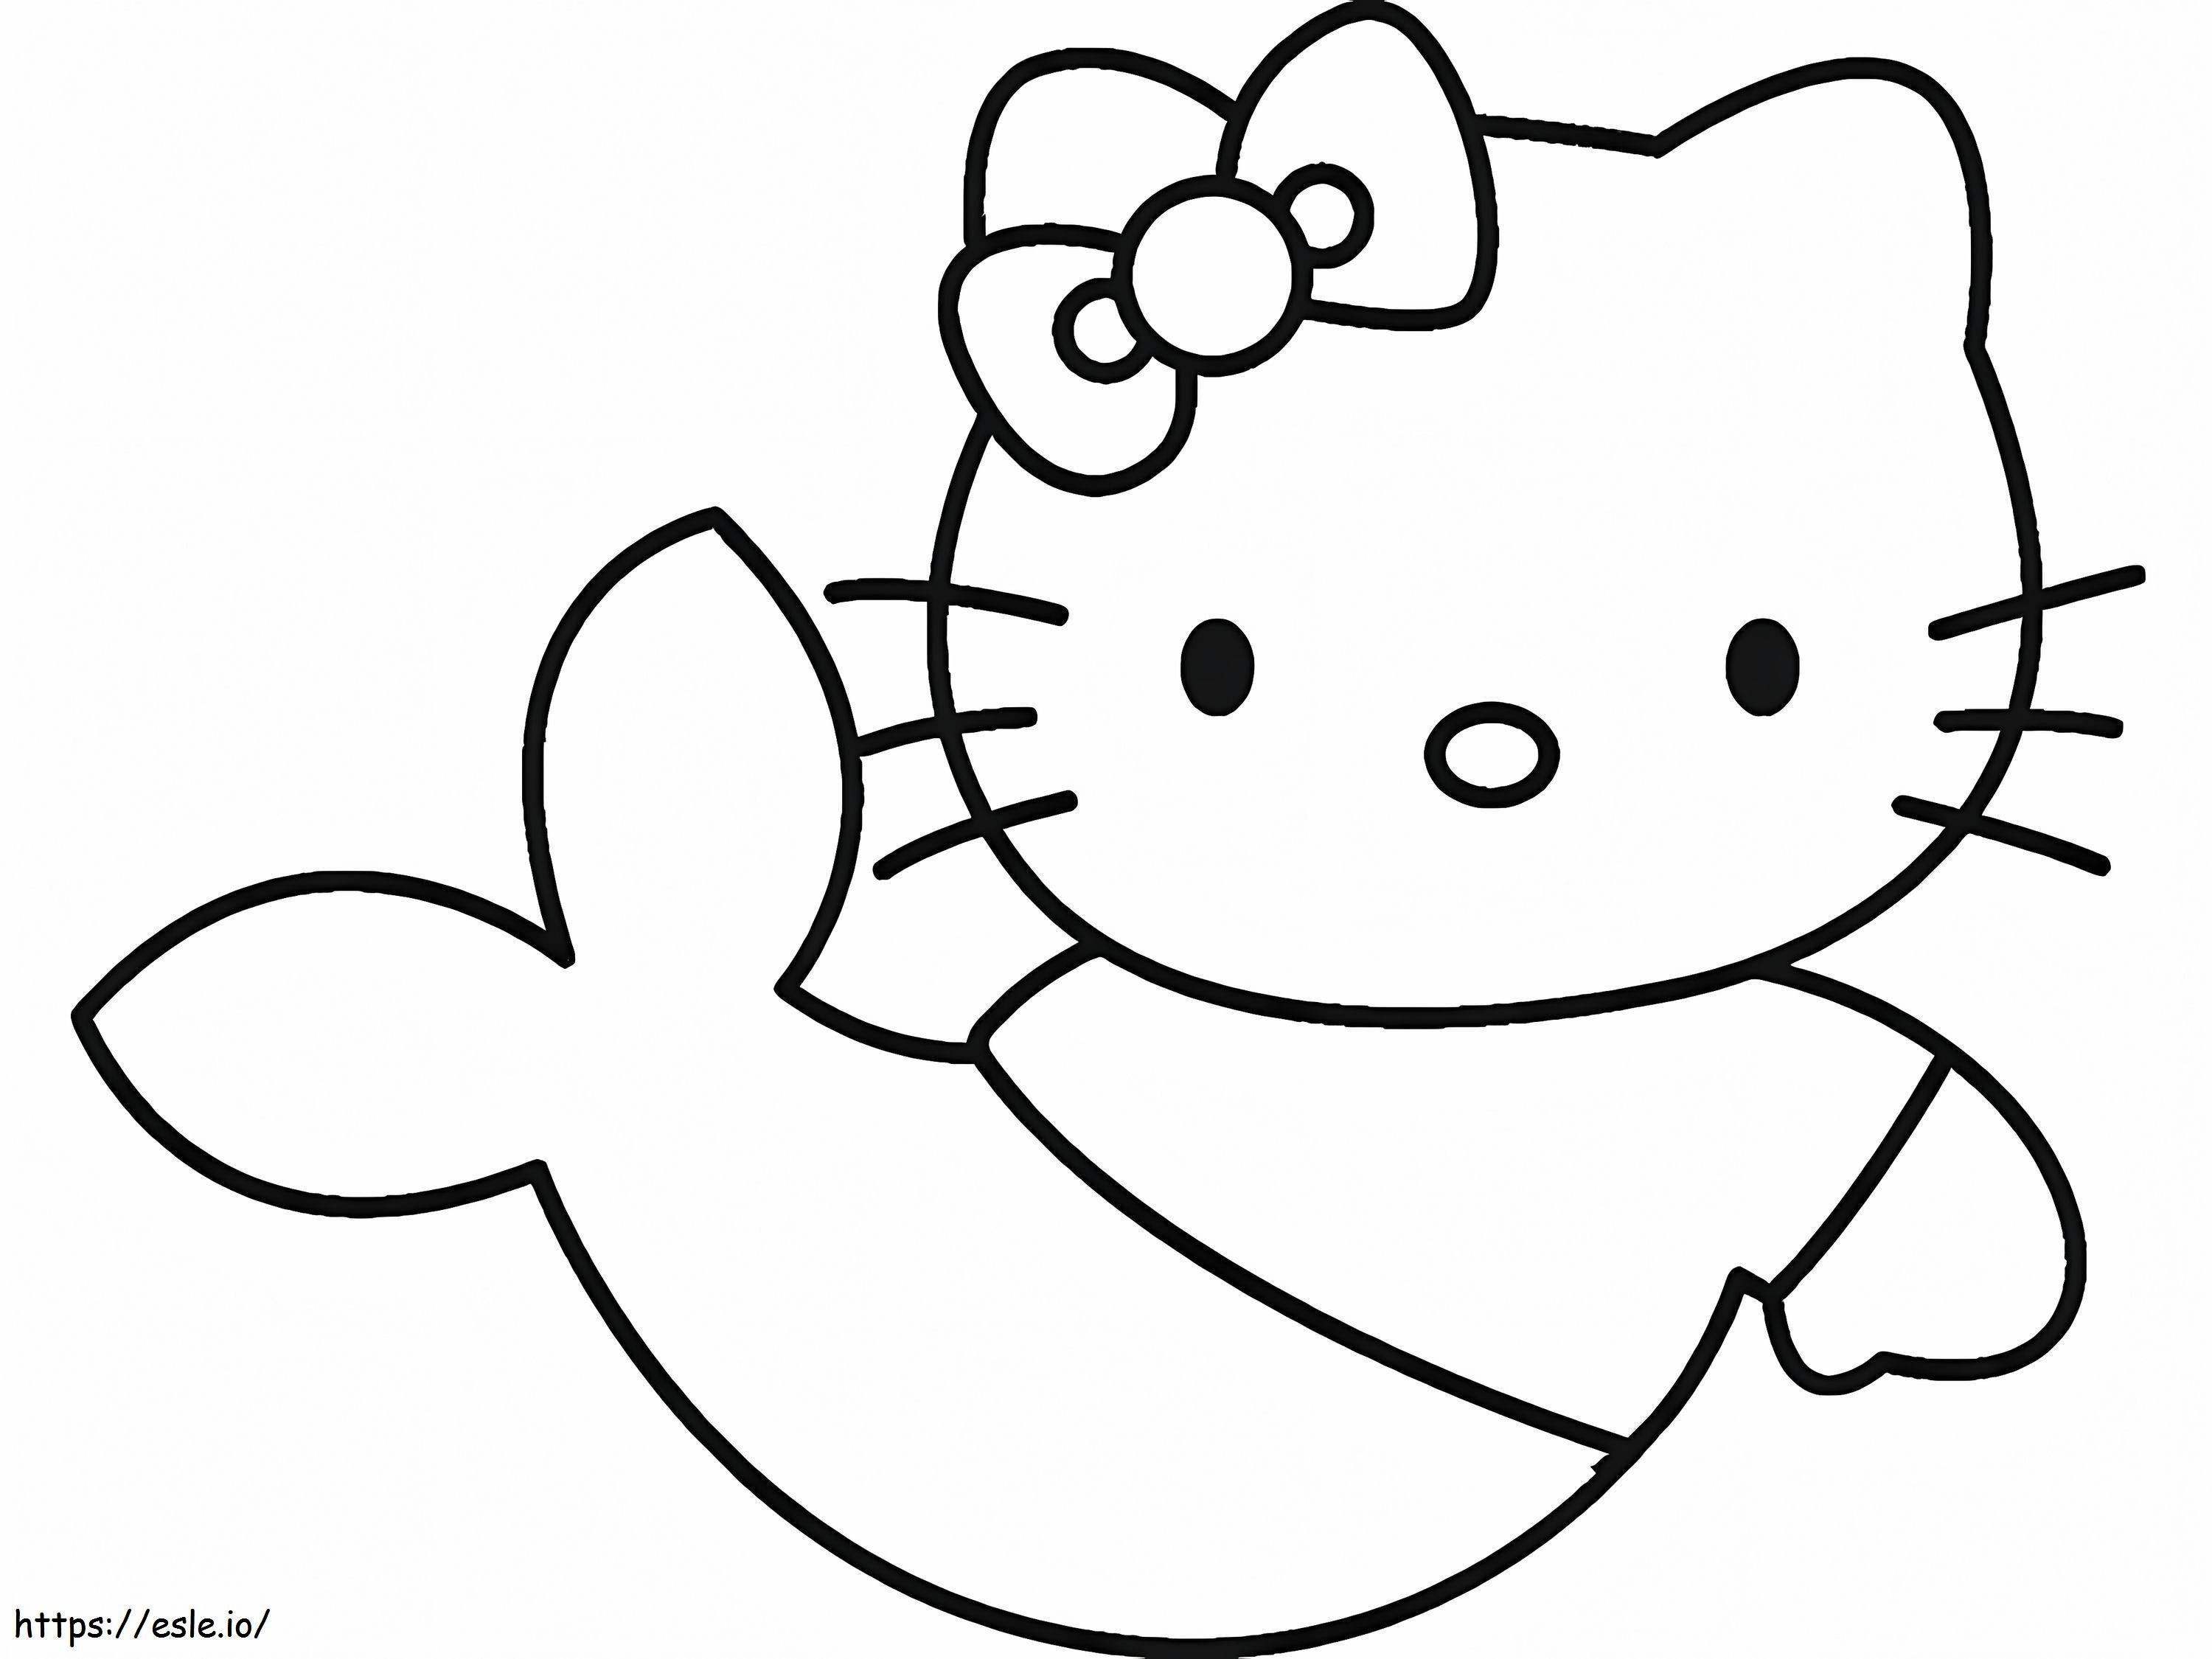 Coloriage Sirène Hello Kitty simple à imprimer dessin